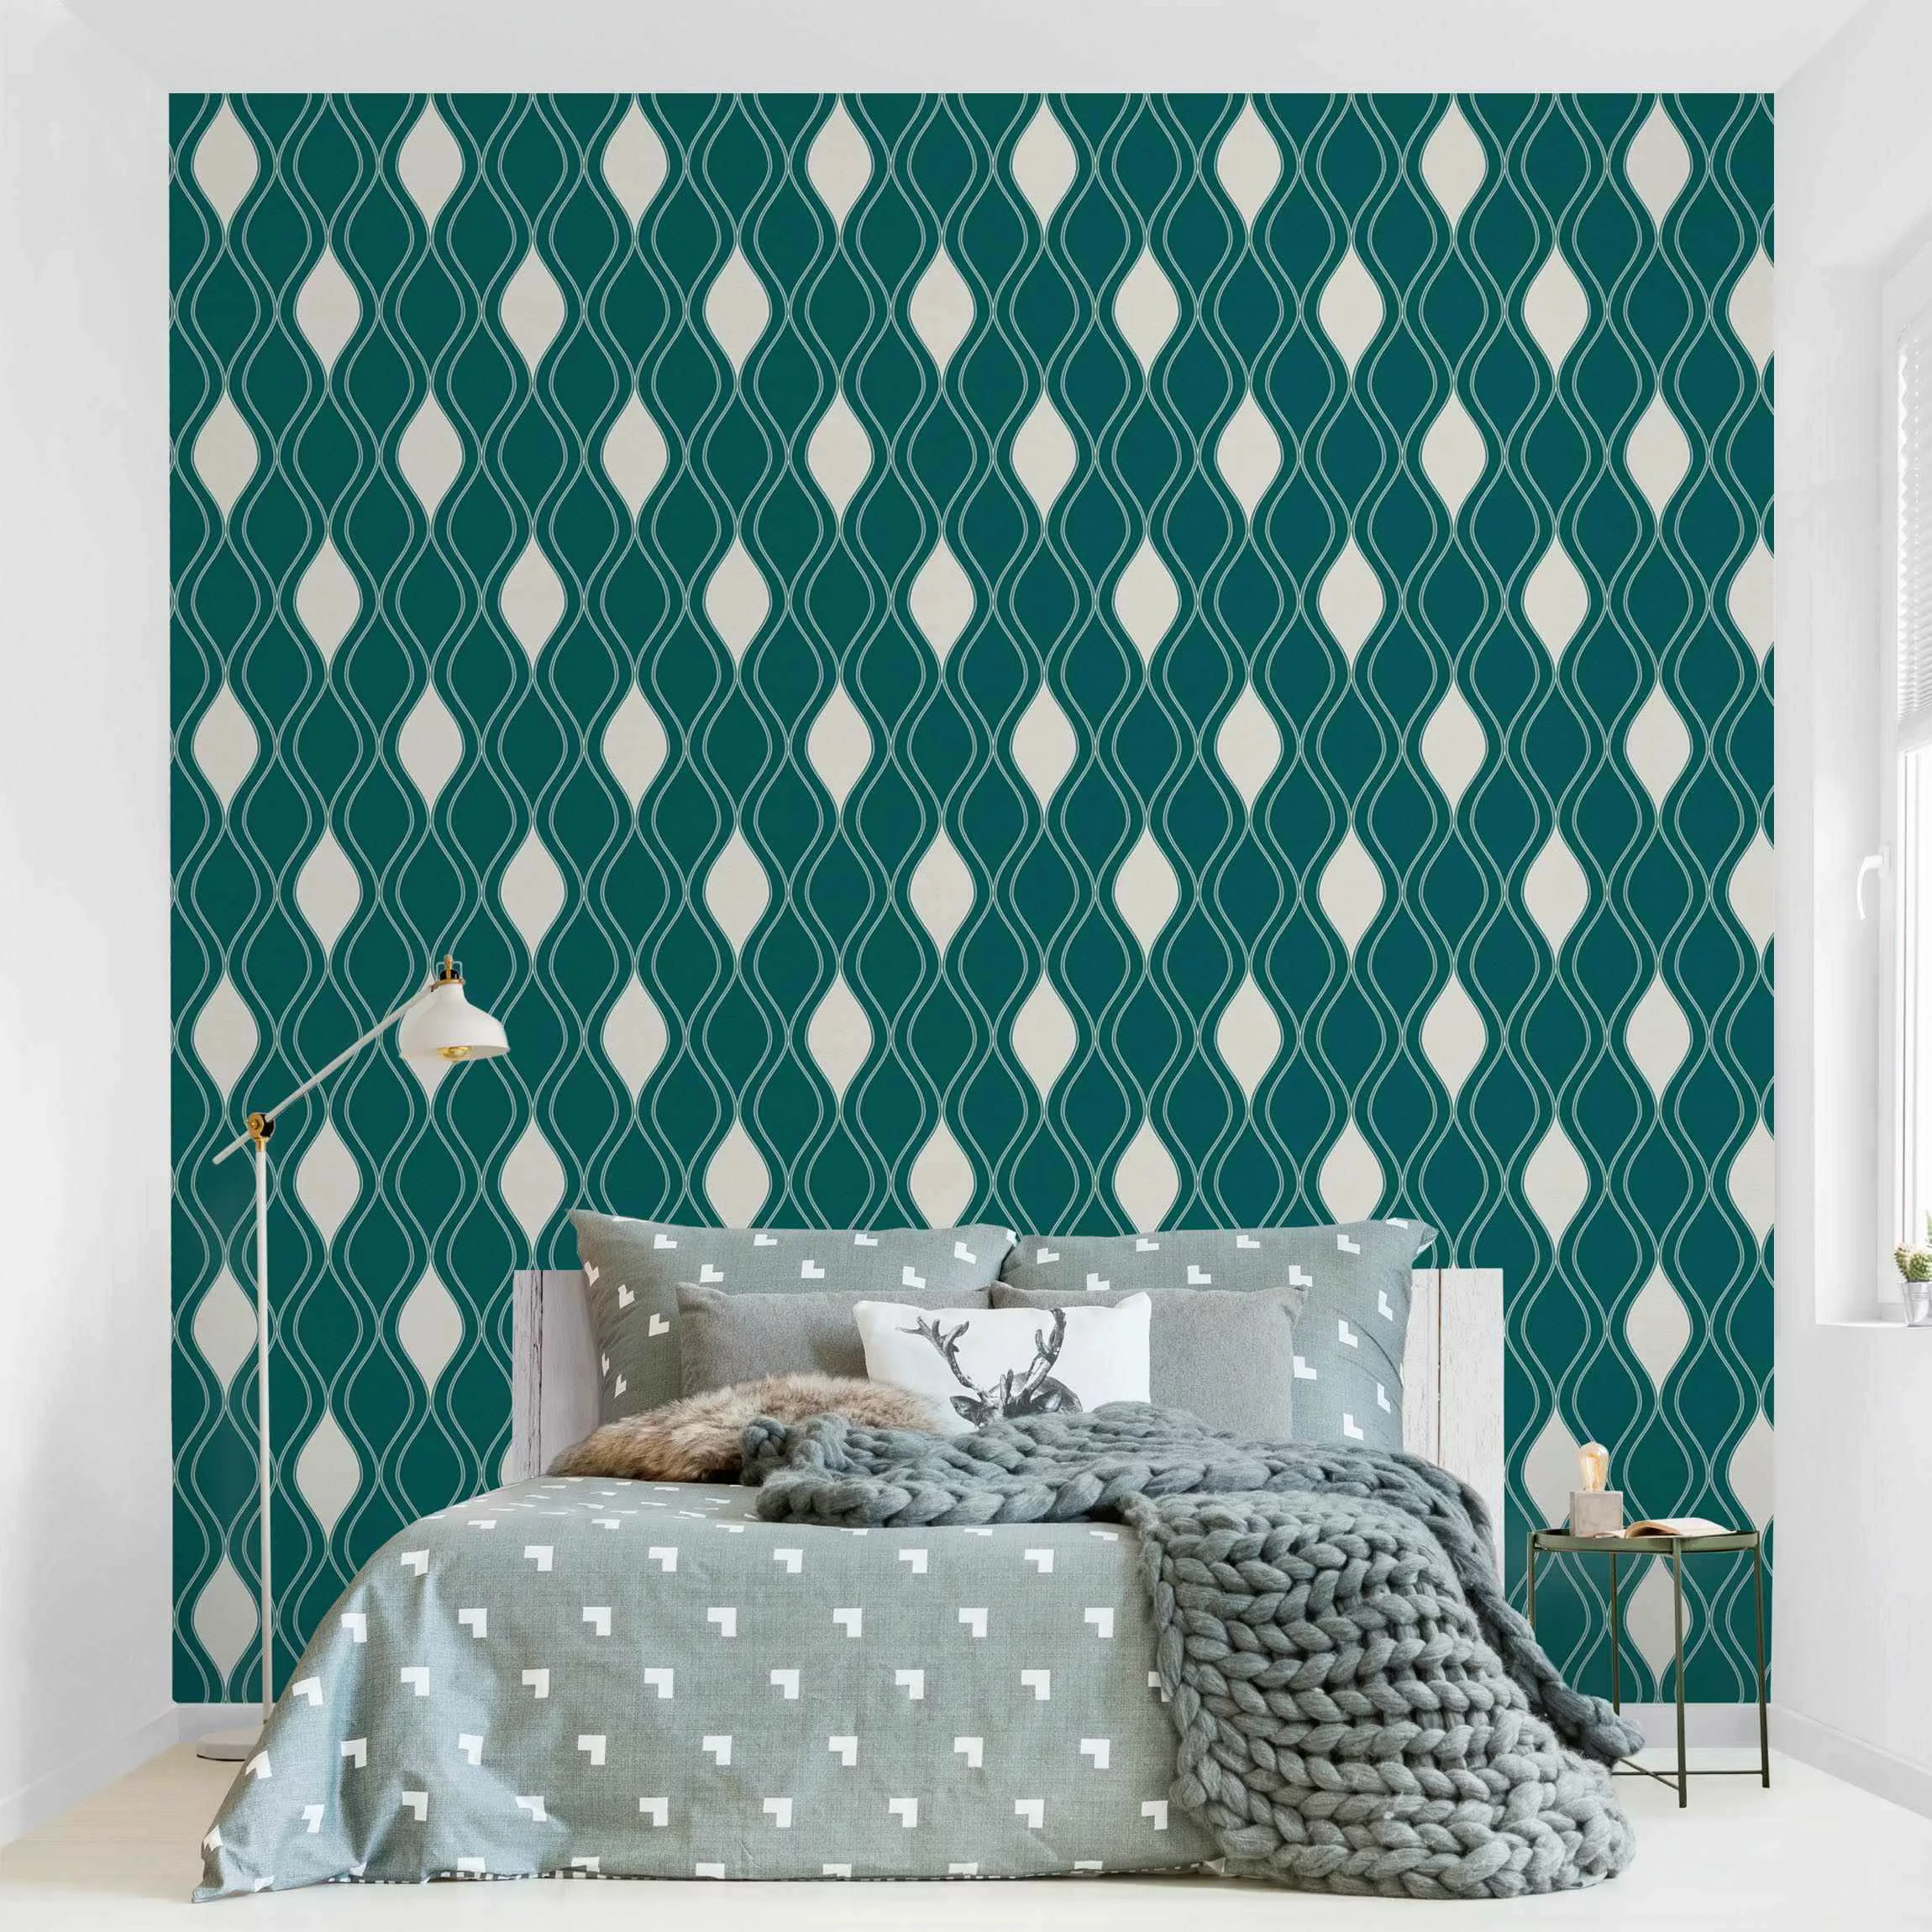 Fototapete Retro Muster mit glänzenden Tropfen in smaragd günstig online kaufen